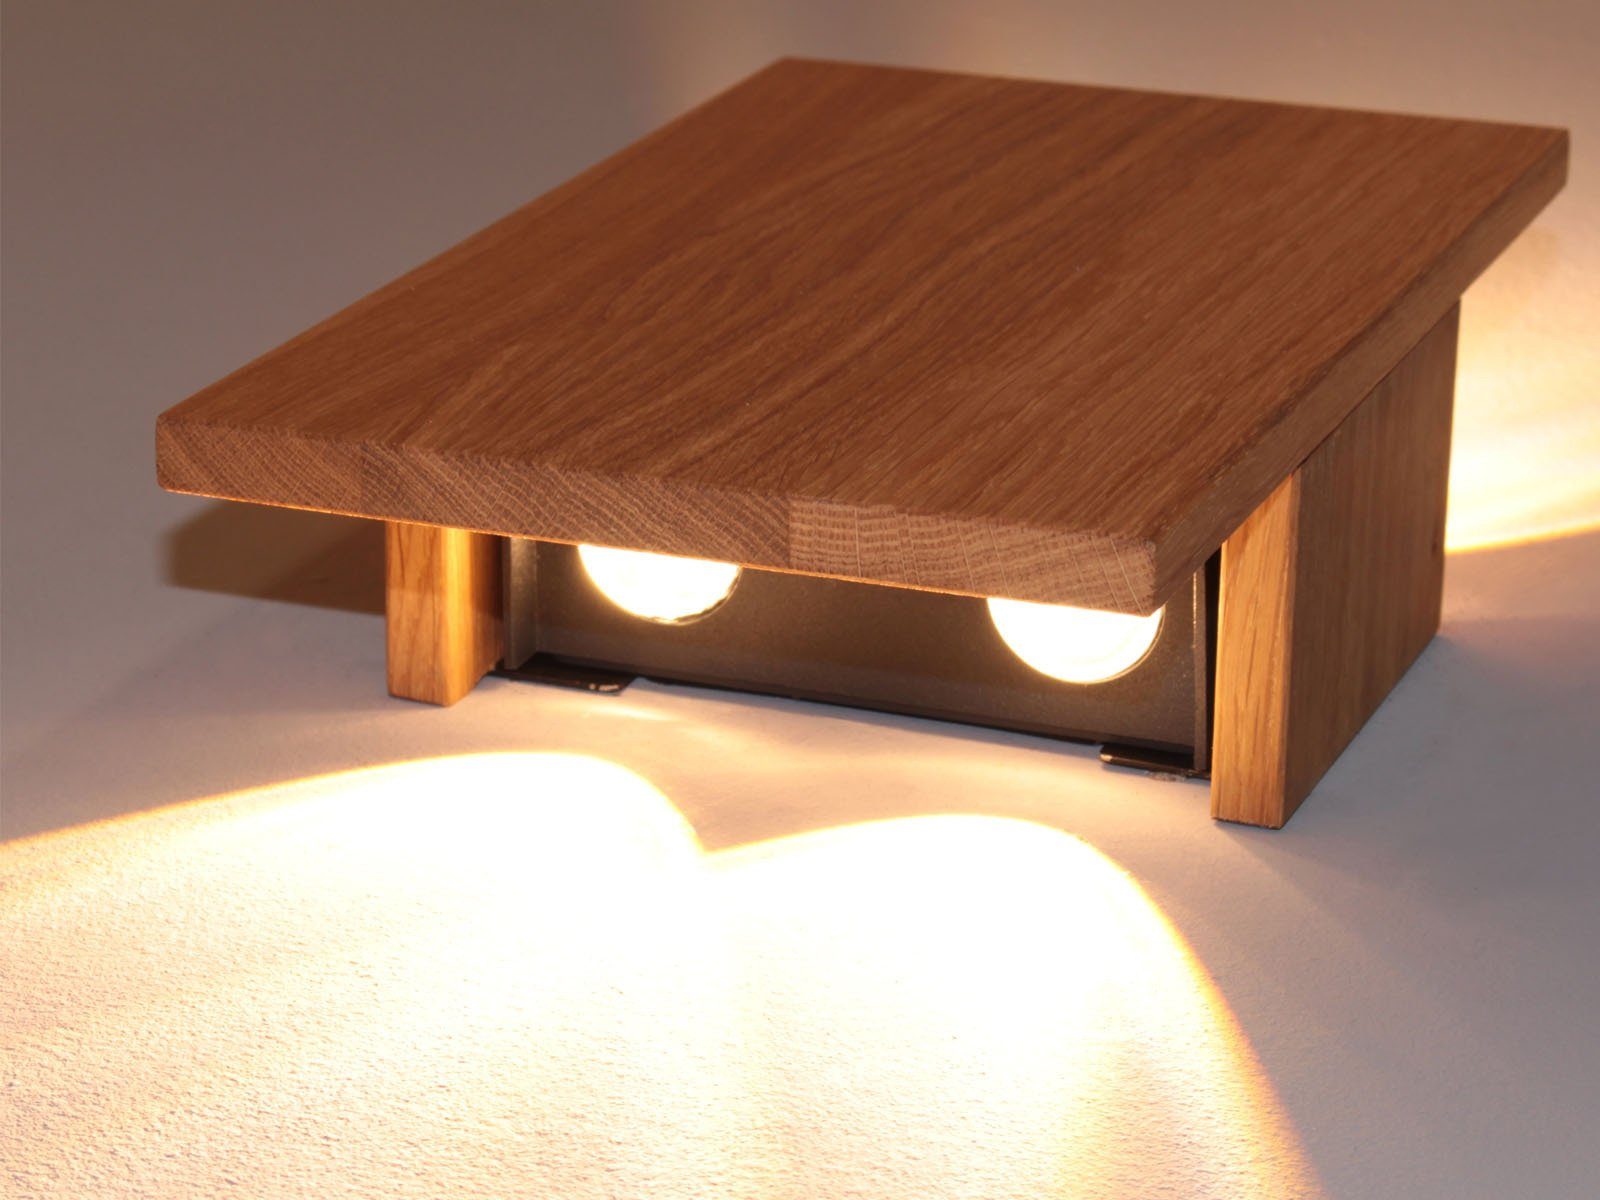 LED integriert, innen 2er indirekte Warmweiß, breit fest Wandleuchte, Holz-Lampen LED 15cm Wand-Beleuchtung flach, meineWunschleuchte SET